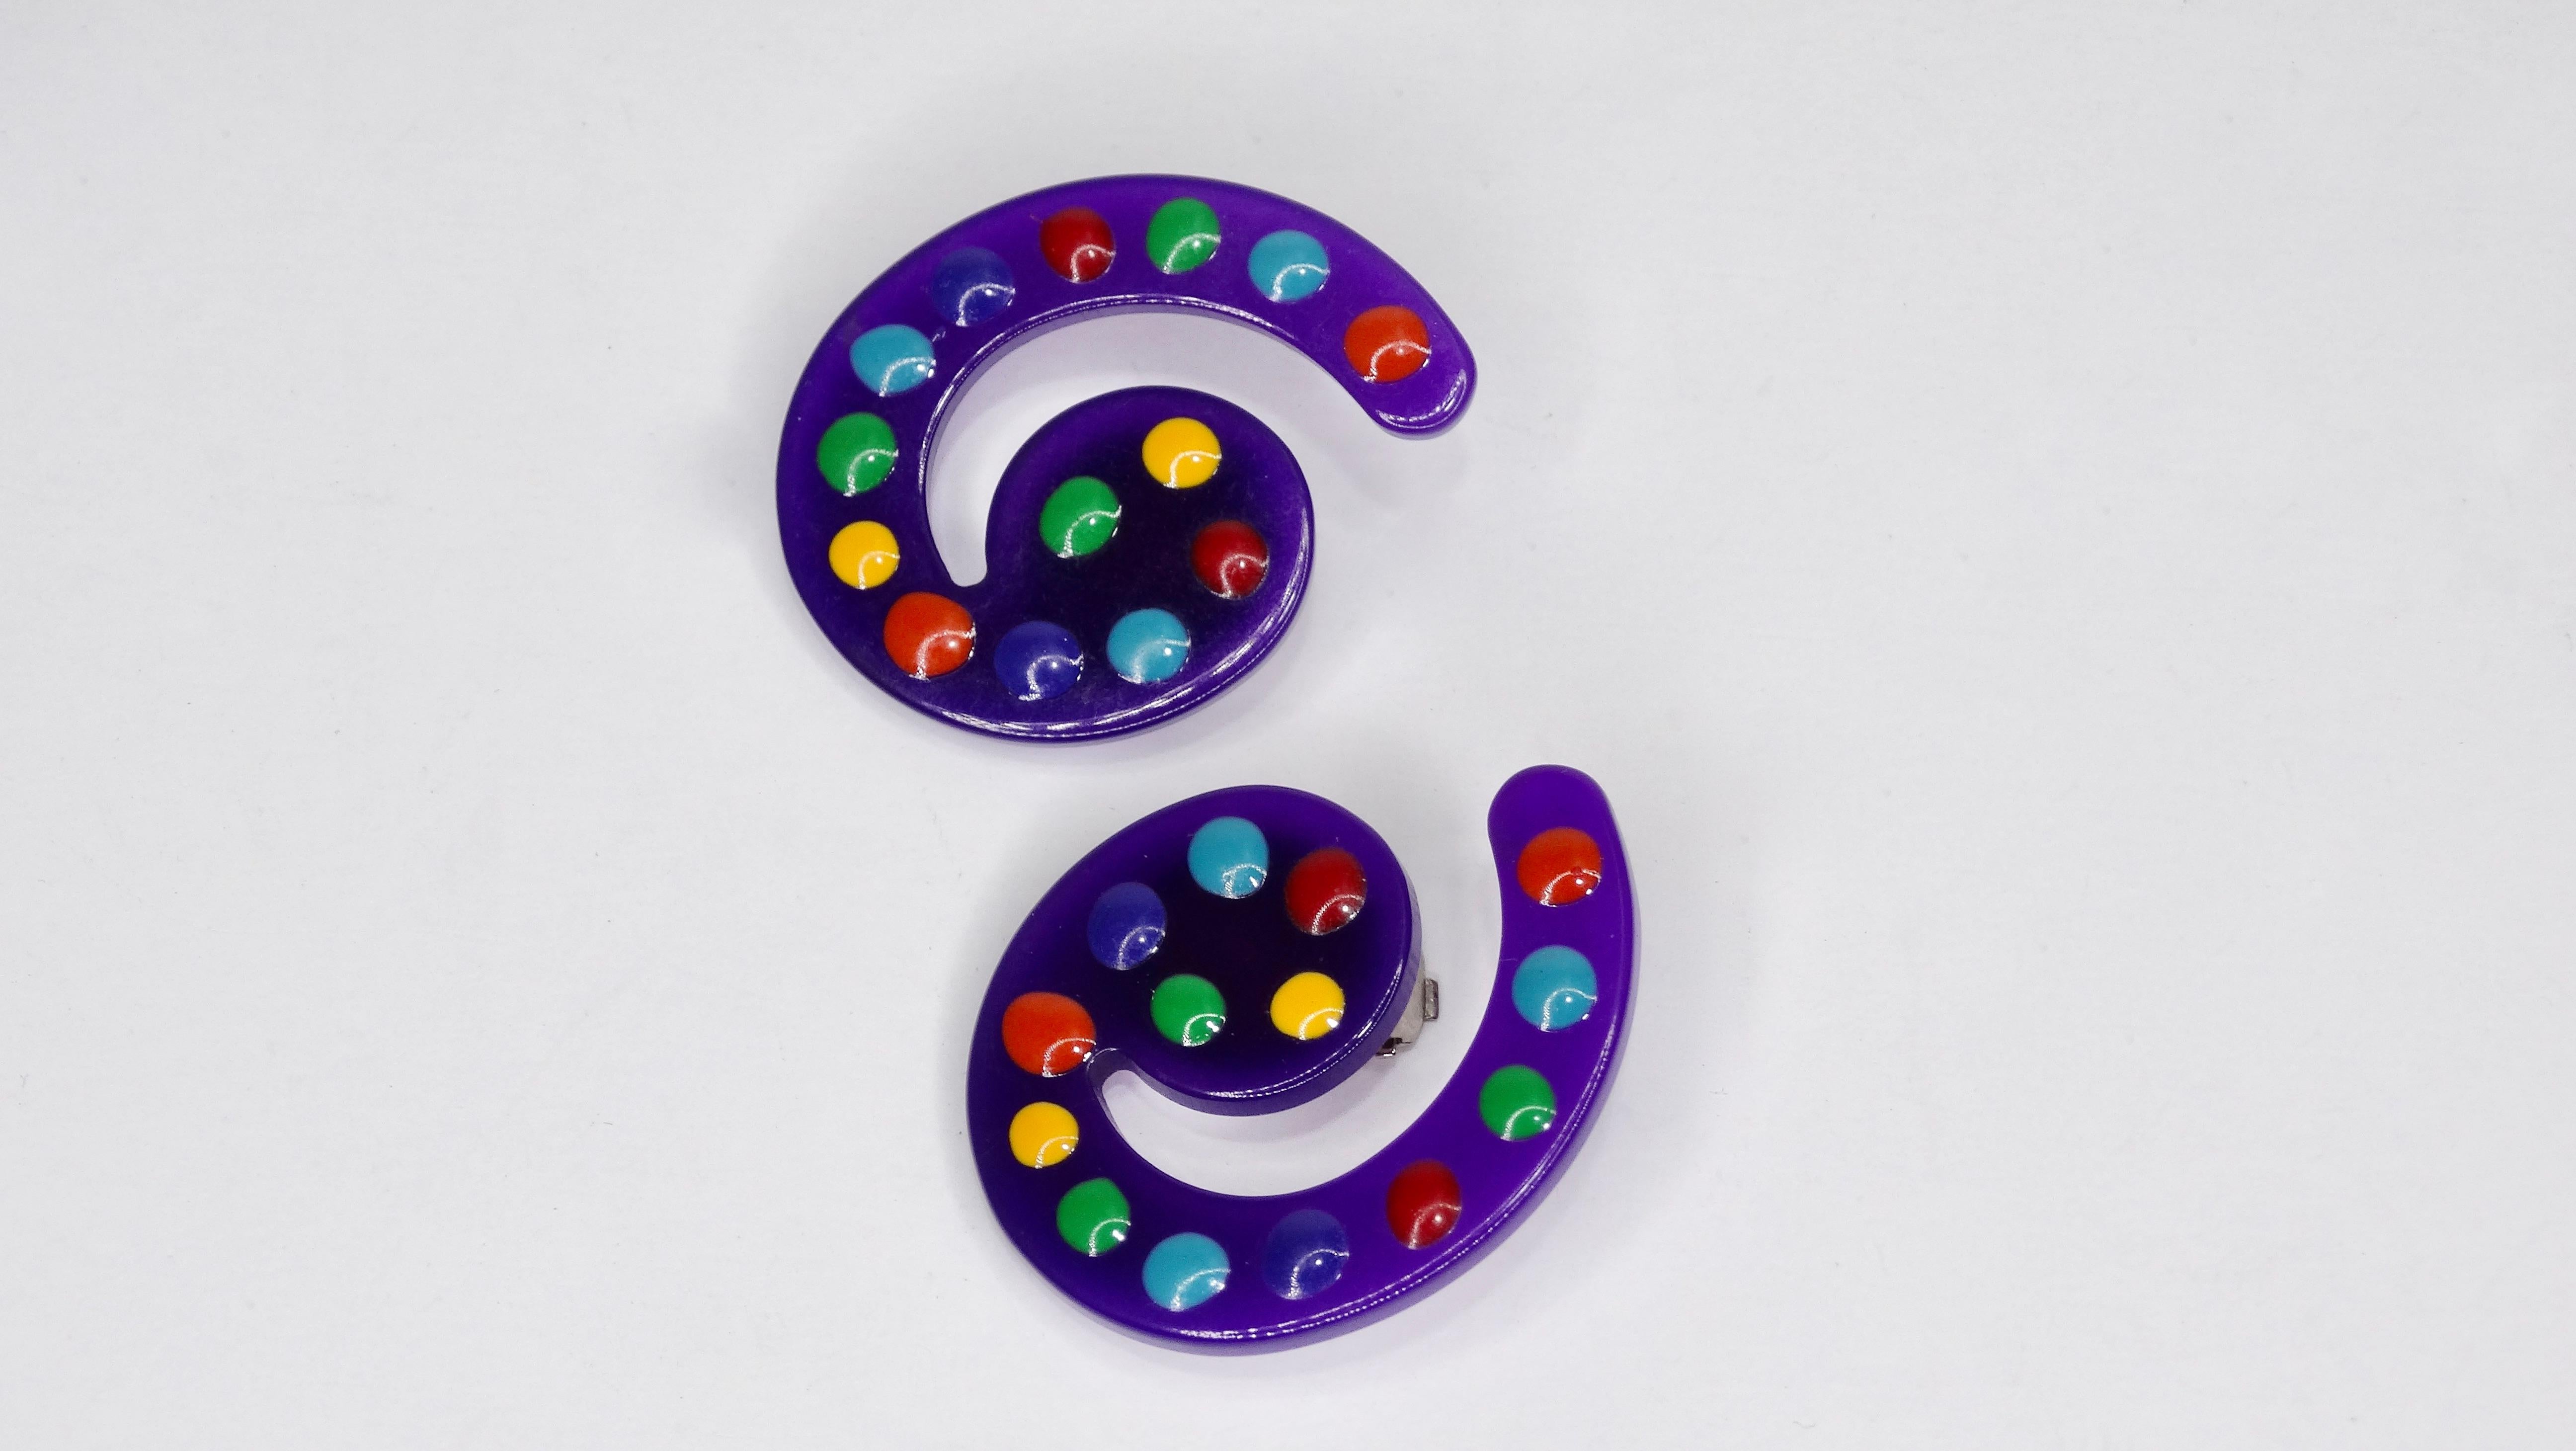 Bringen Sie etwas Farbe in Ihren Look mit unseren 1980er Missoni Clip On Ohrringen! Diese Ohrringe sind aus violetten Lucit-Spiralen gefertigt und mit bunten Punkten verziert. Rückseiten zum Aufstecken. Missoni-Etiketten auf den Rückseiten.

Höhe: